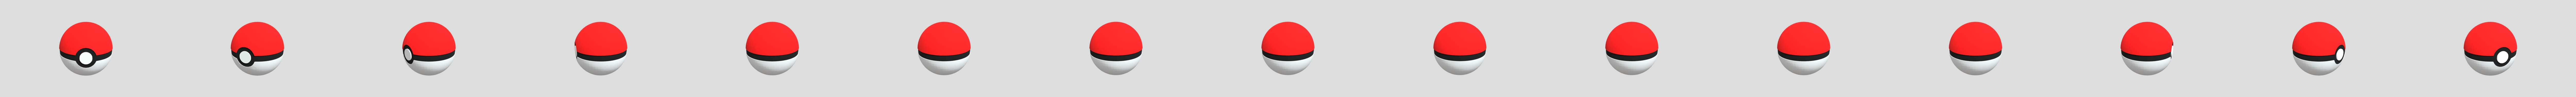 Pokey ball - 3D model by vihaan (@8645vihaan) [40a5523]